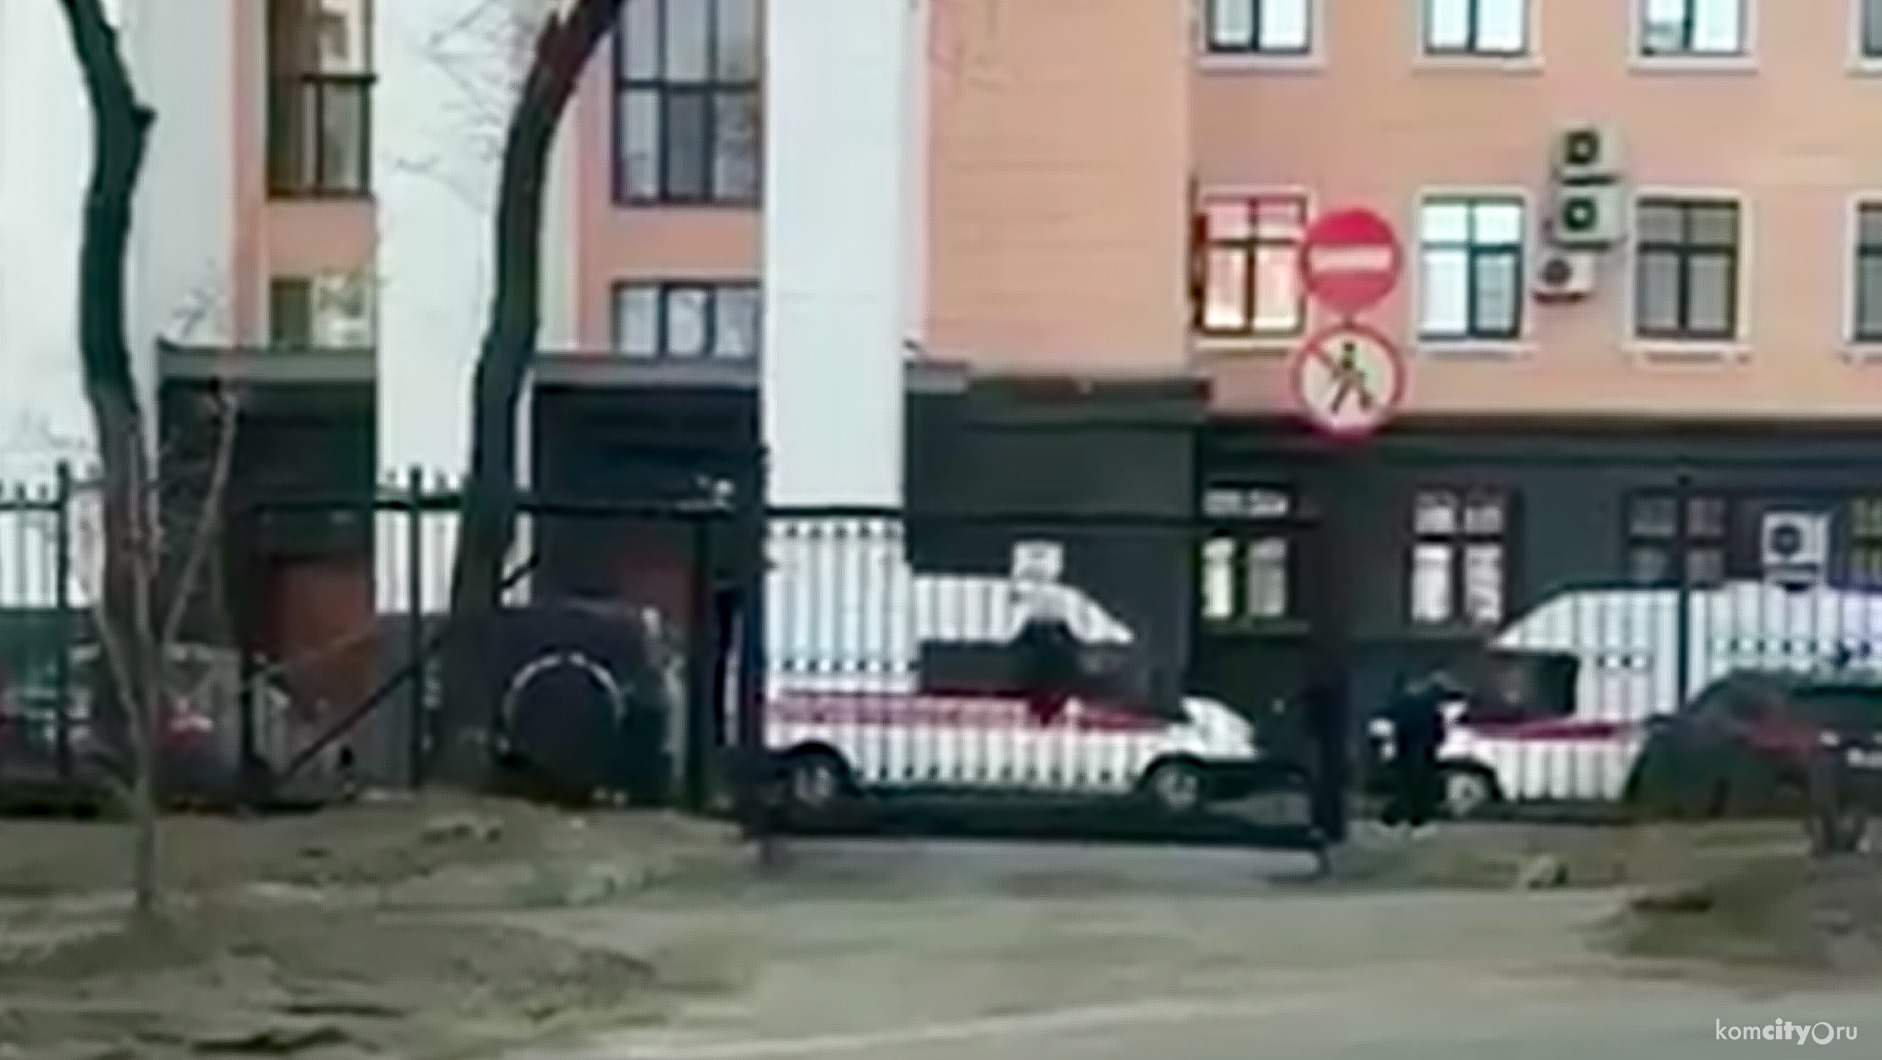 В Хабаровске напали на приёмную ФСБ, трое убиты, включая нападавшего